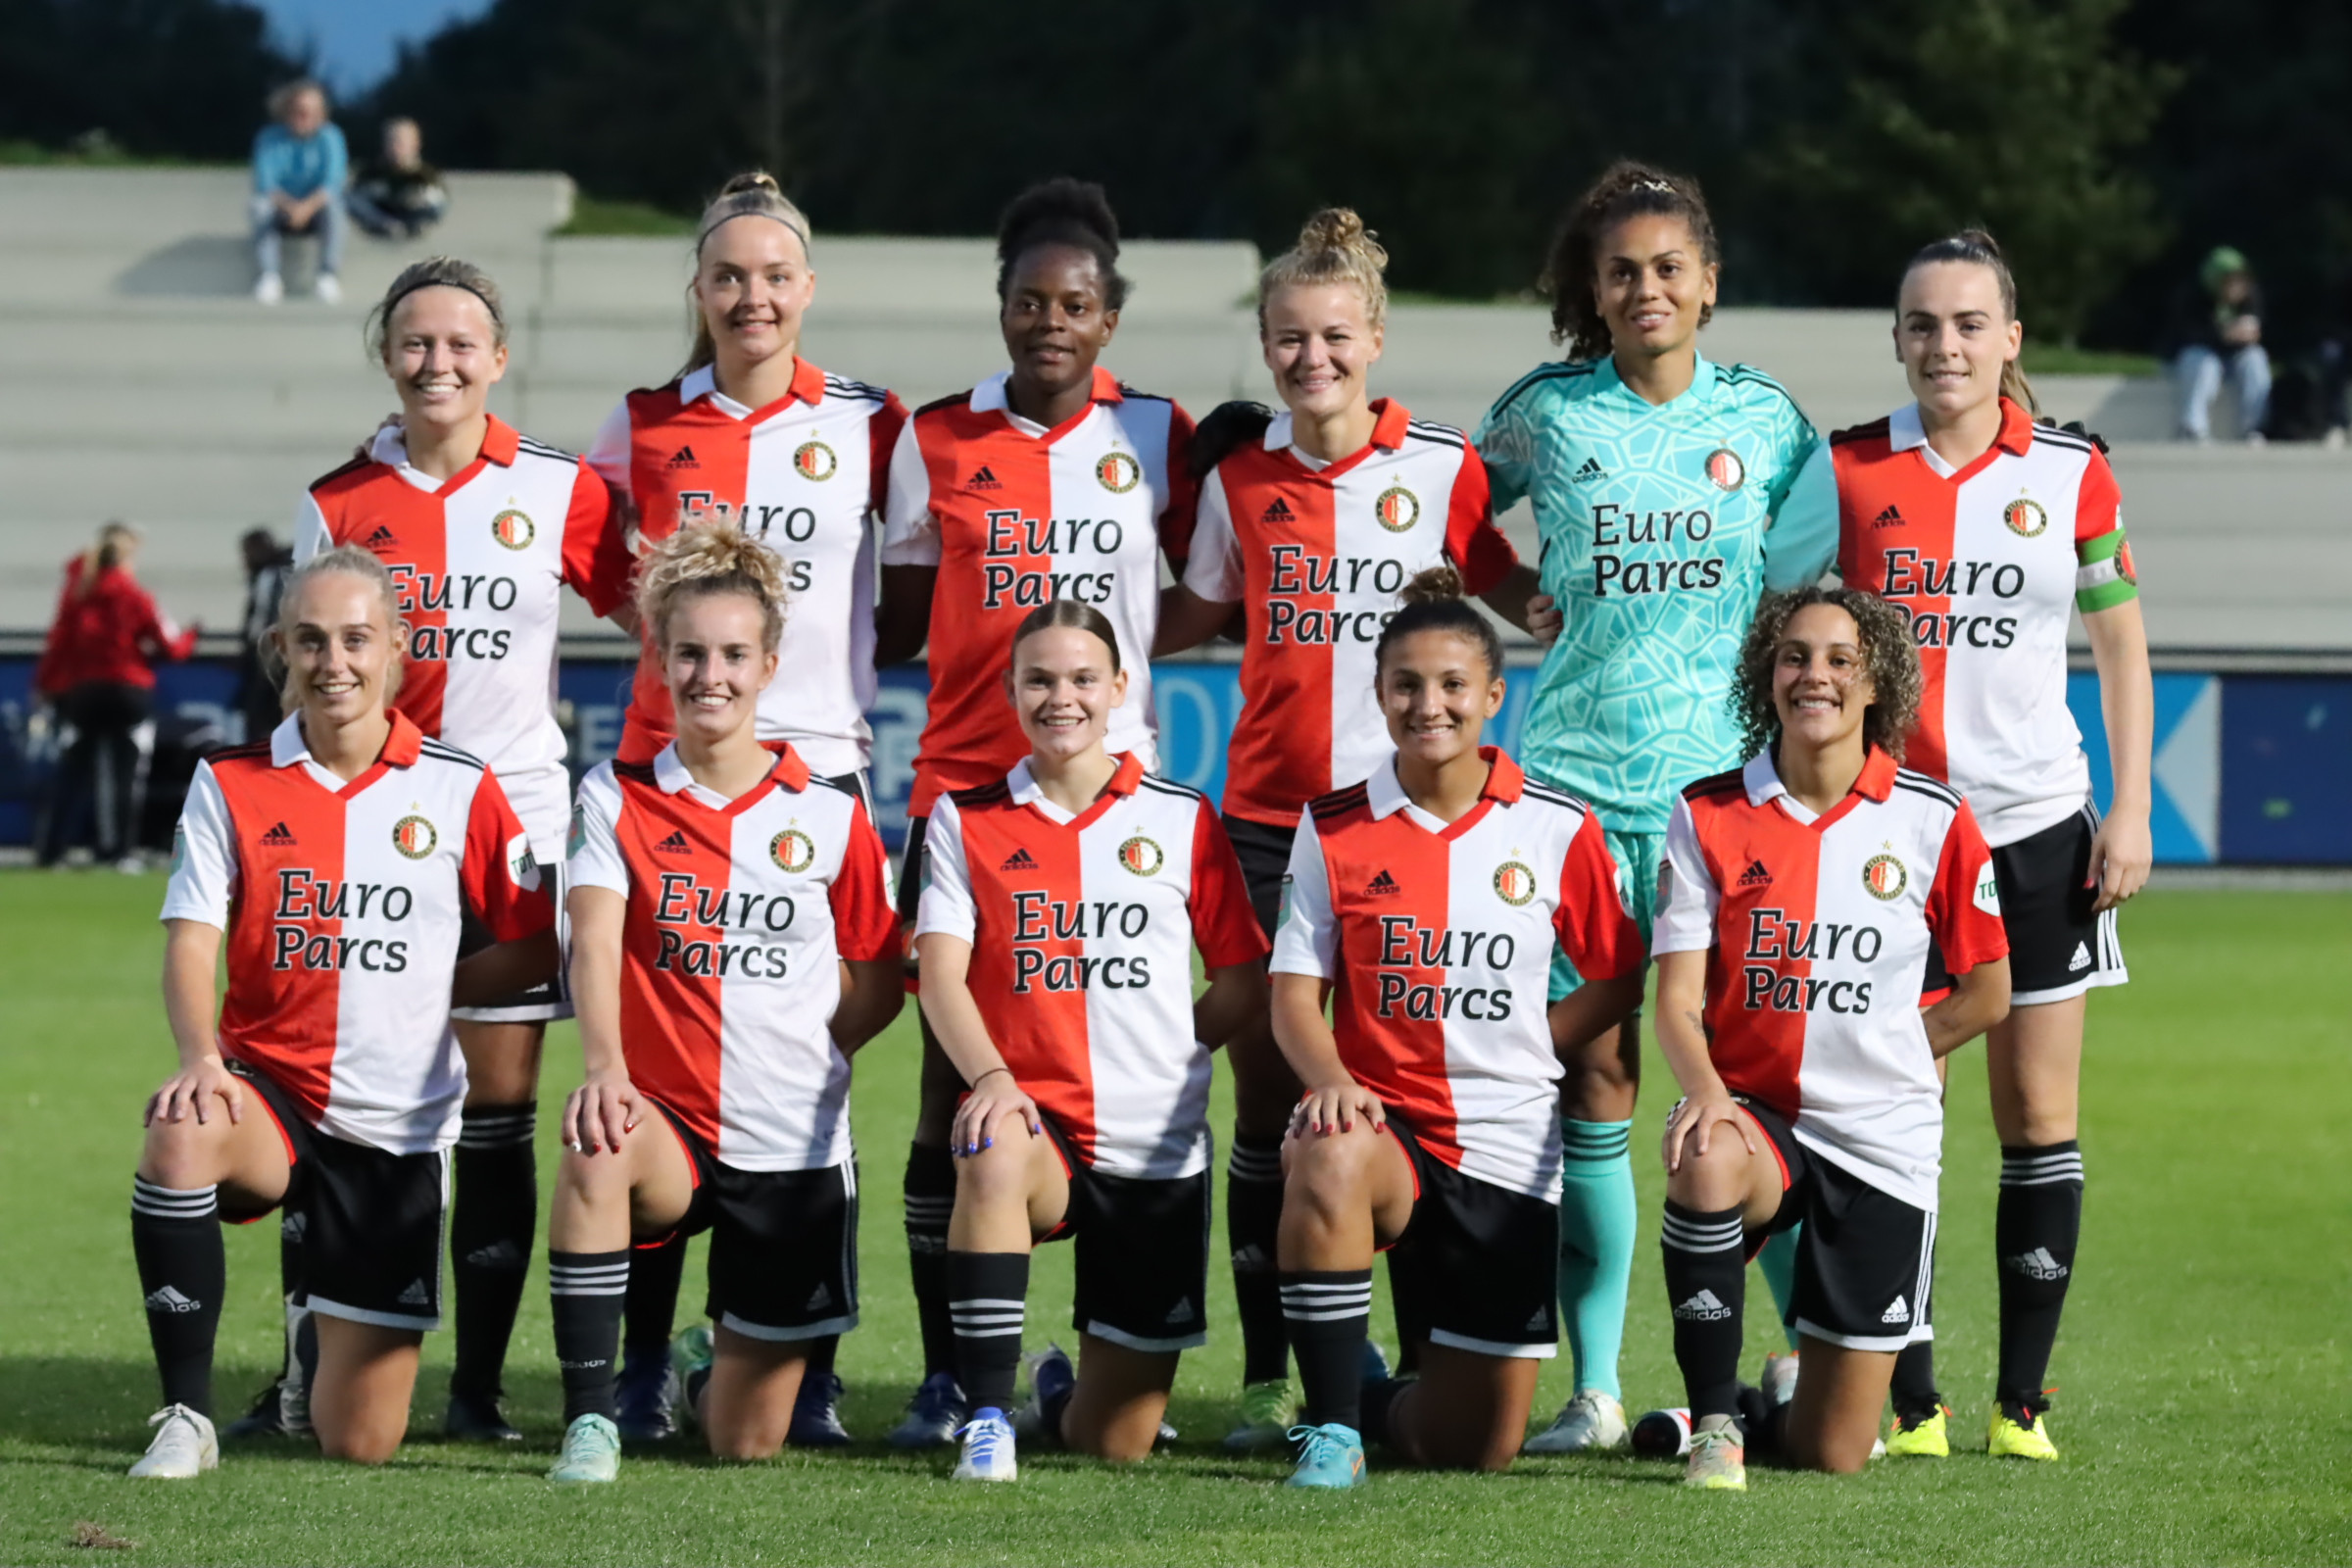 Kaartverkoop Feyenoord Vrouwen tegen Ajax van start